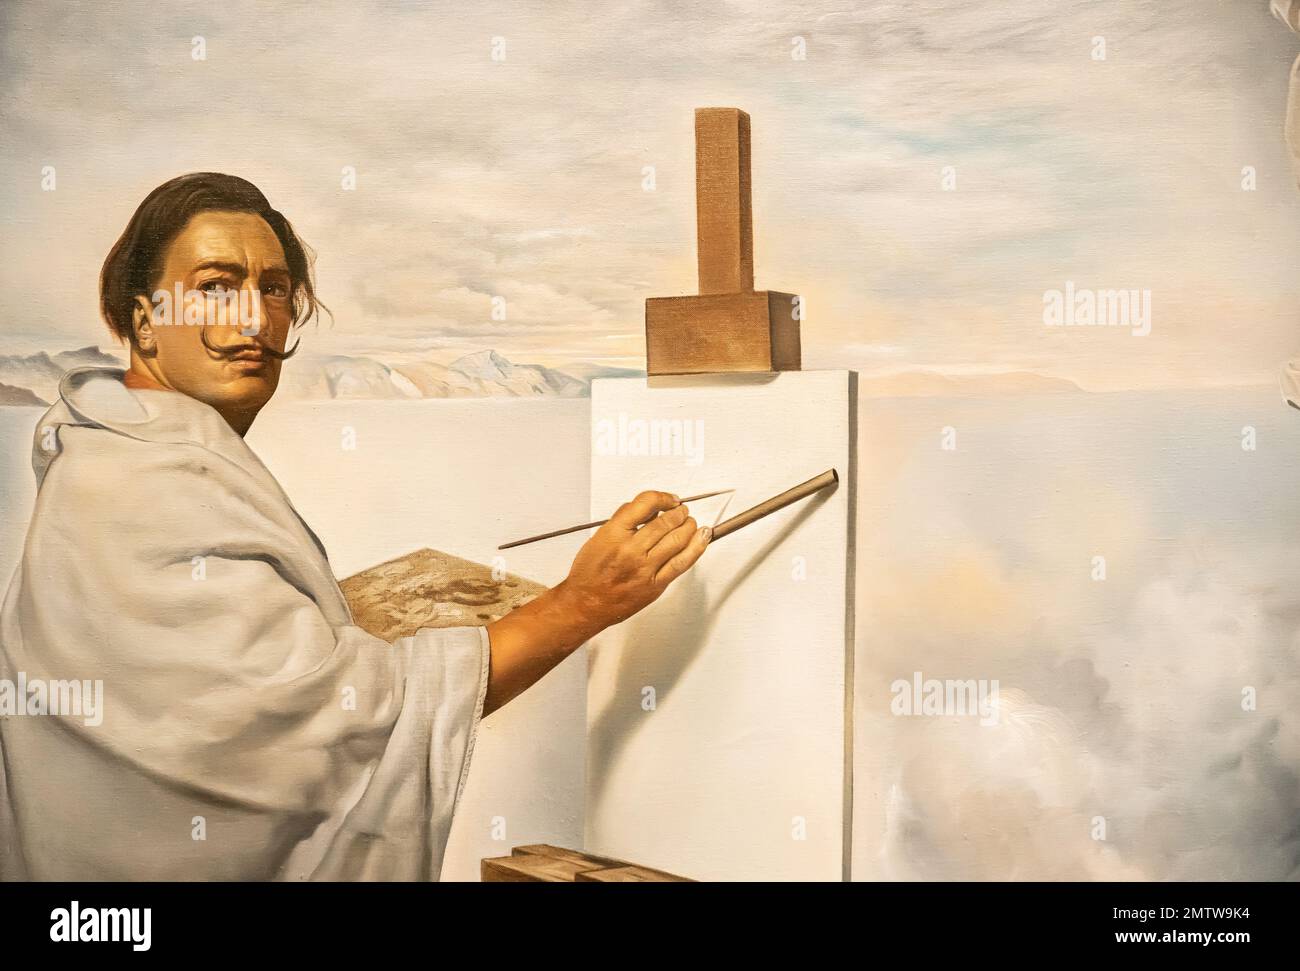 Salvador Dali Museum in St. Petersburg, Florida - Dali malte sich selbst in der Ecke des berühmten monumentalen Gemäldes Ökumenischer Rat Stockfoto